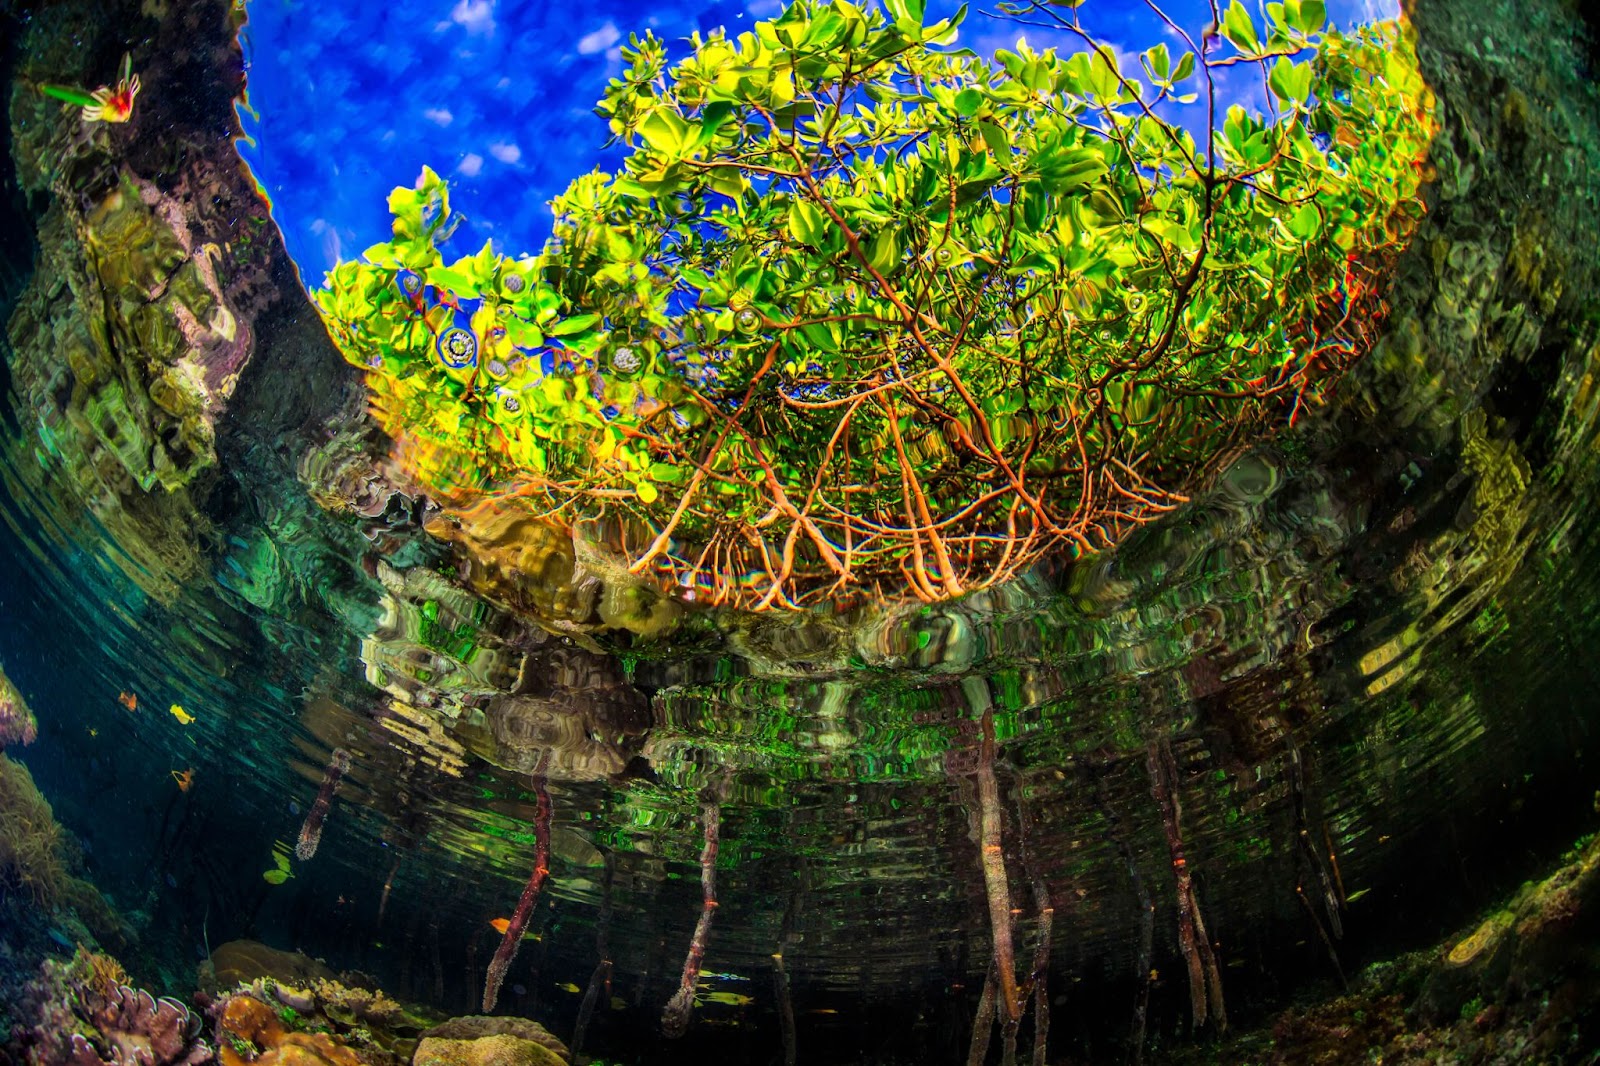 Vista de los manglares desde debajo del agua. Raíces marrones conducen alas hojas de color verde brillante que se dibujan contra un cielo azulbrillante, arraigadas en un agua verdeondulada